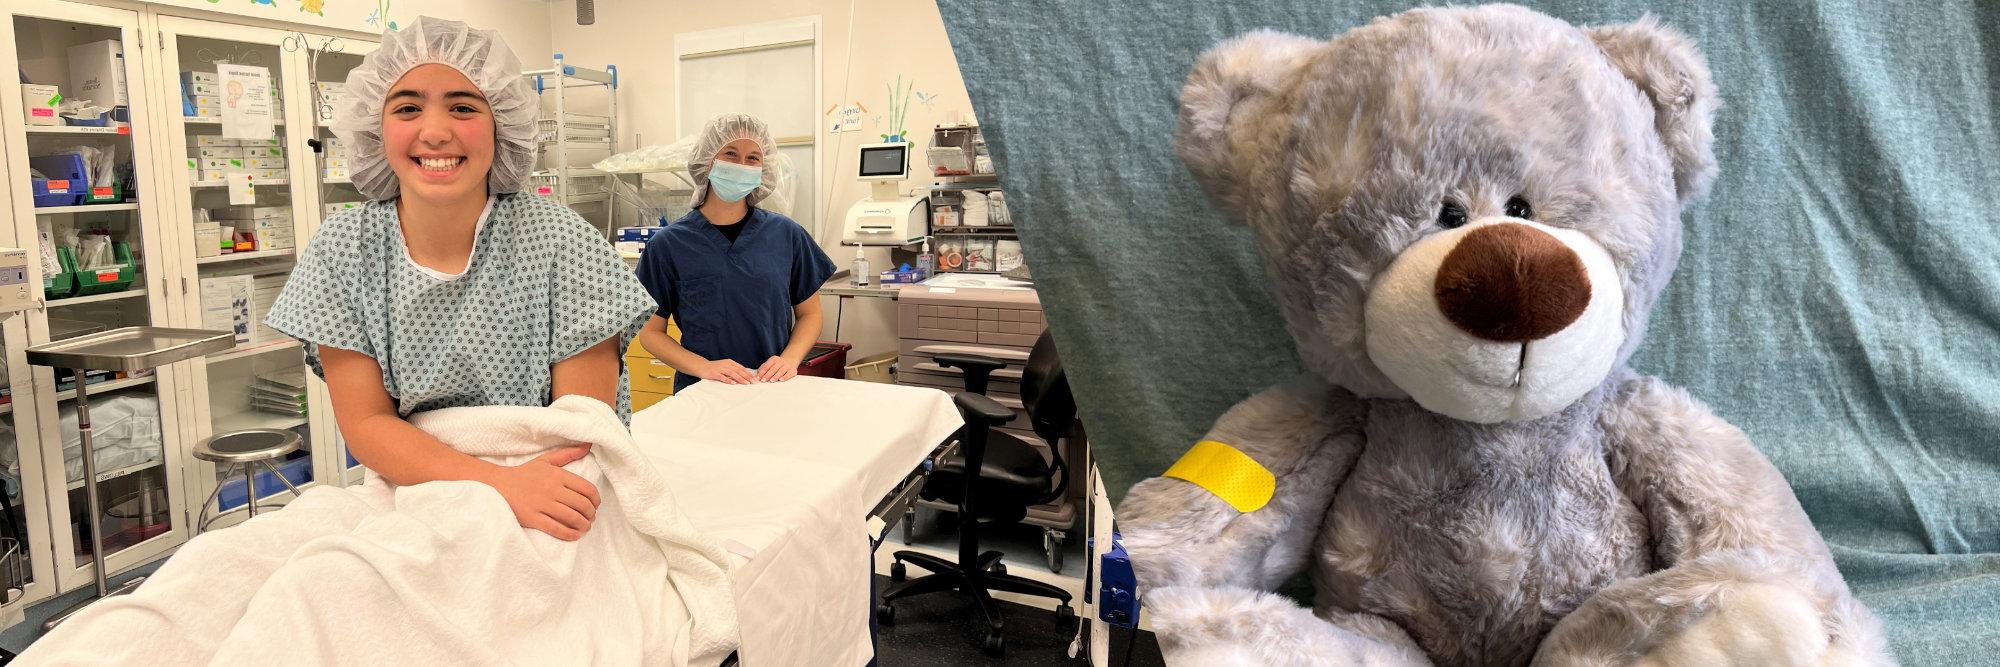 熊和孩子在准备手术时微笑着